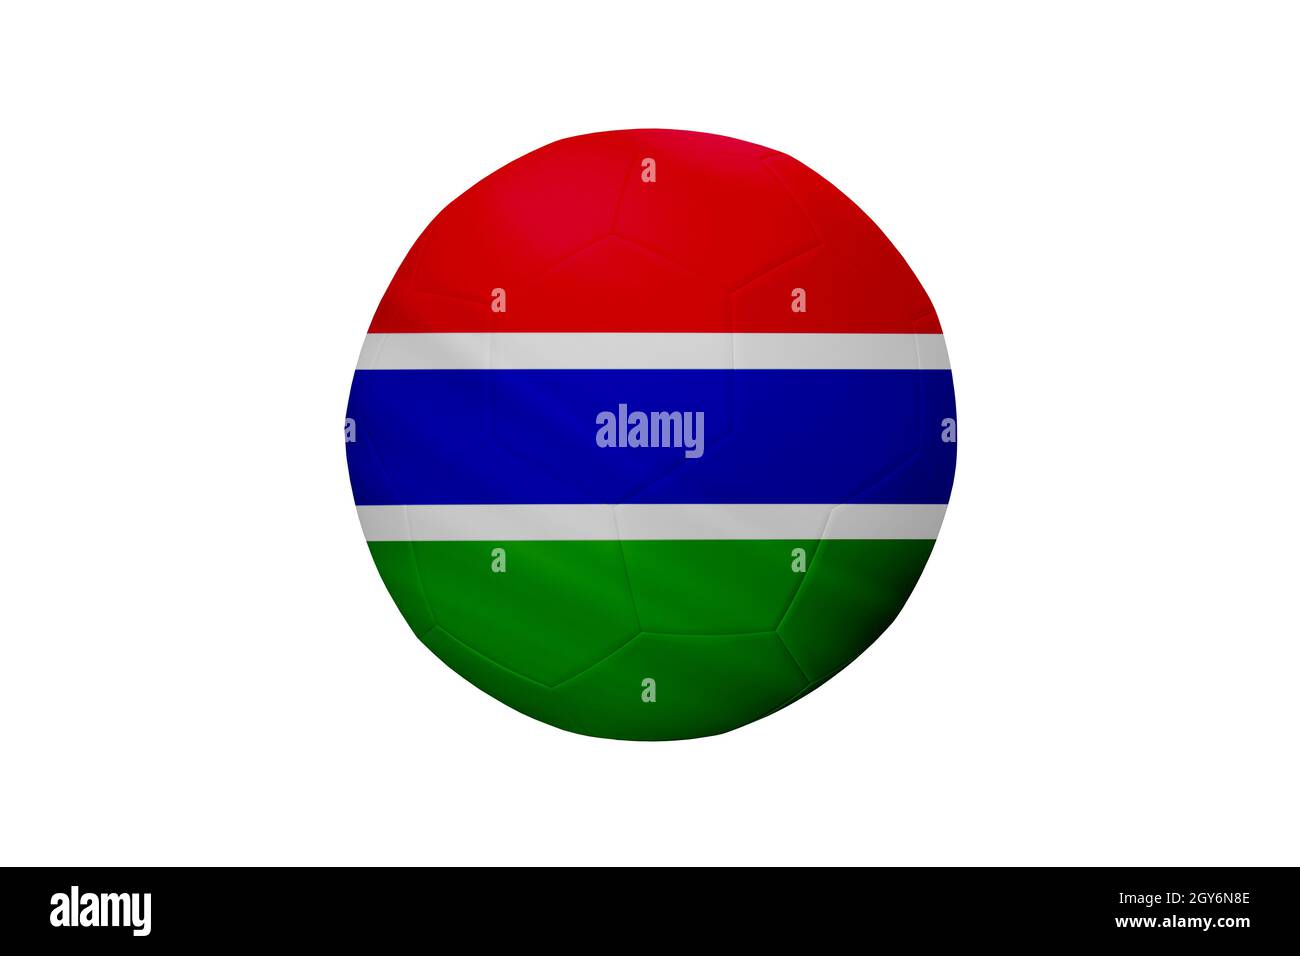 Calcio nei colori della bandiera della Gambia isolata su sfondo bianco. In un'immagine concettuale di campionato a sostegno della Gambia. Foto Stock